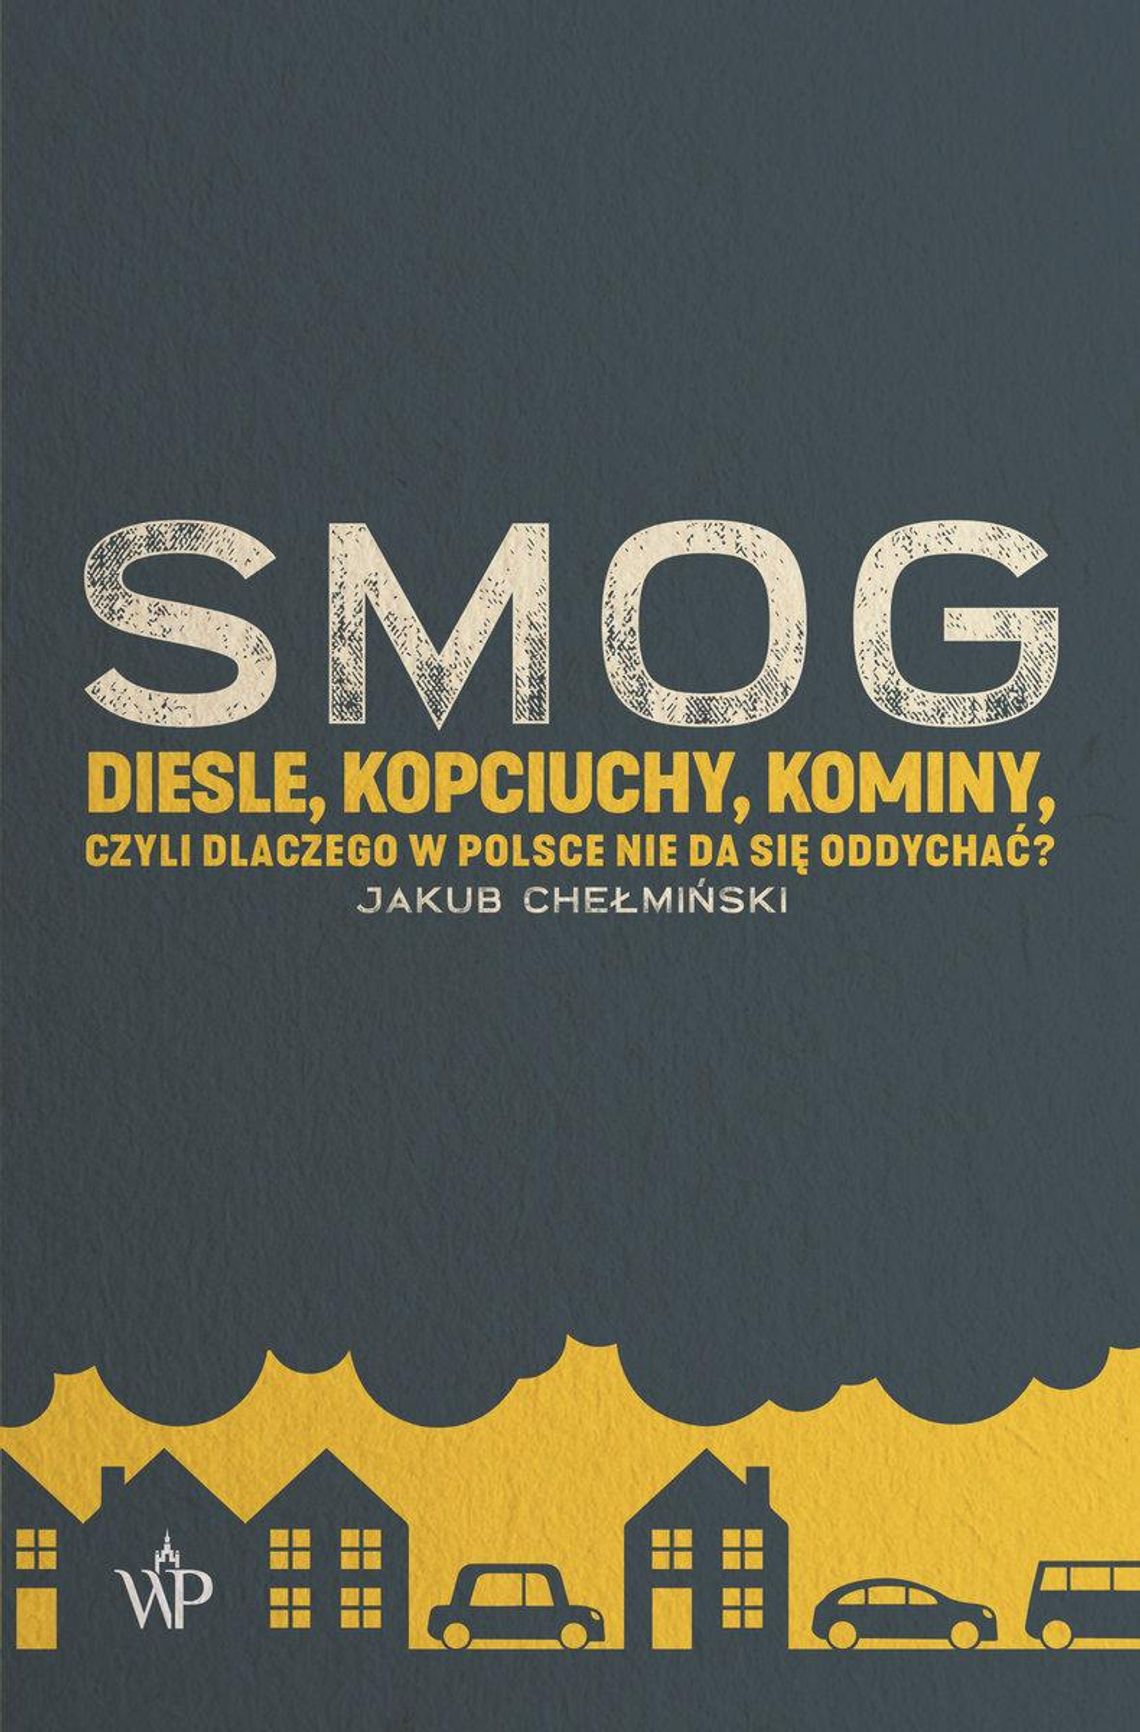 Recenzja książki "SMOG. Diesle, kopciuchy, kominy - czyli dlaczego w Polsce nie da się oddychać?"